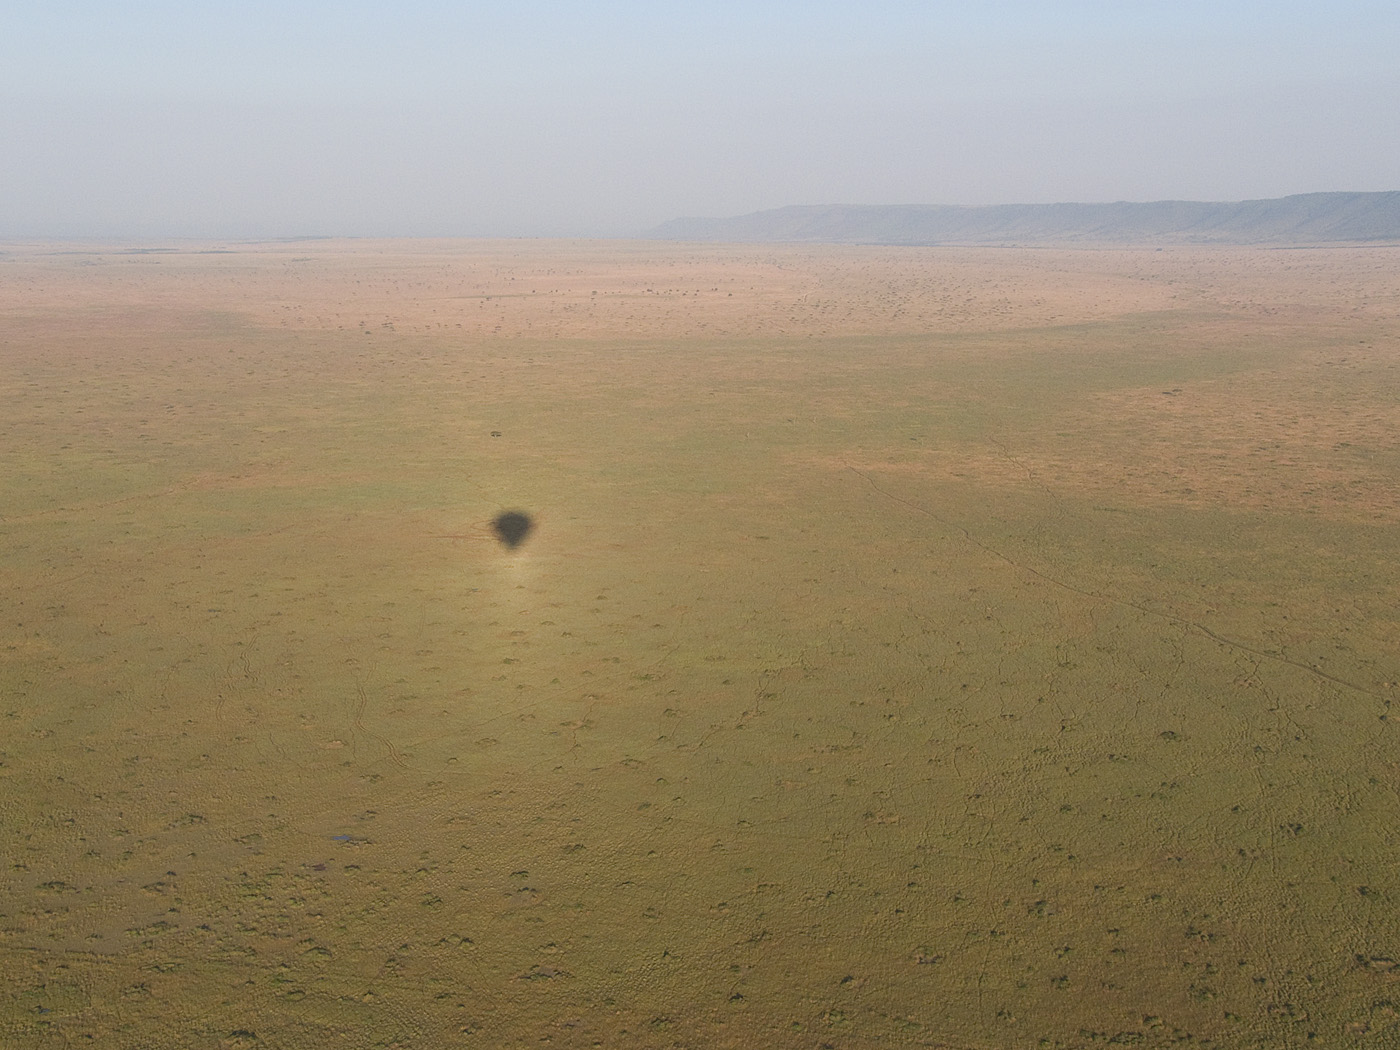 View from Hot Air Balloon, Masai Mara